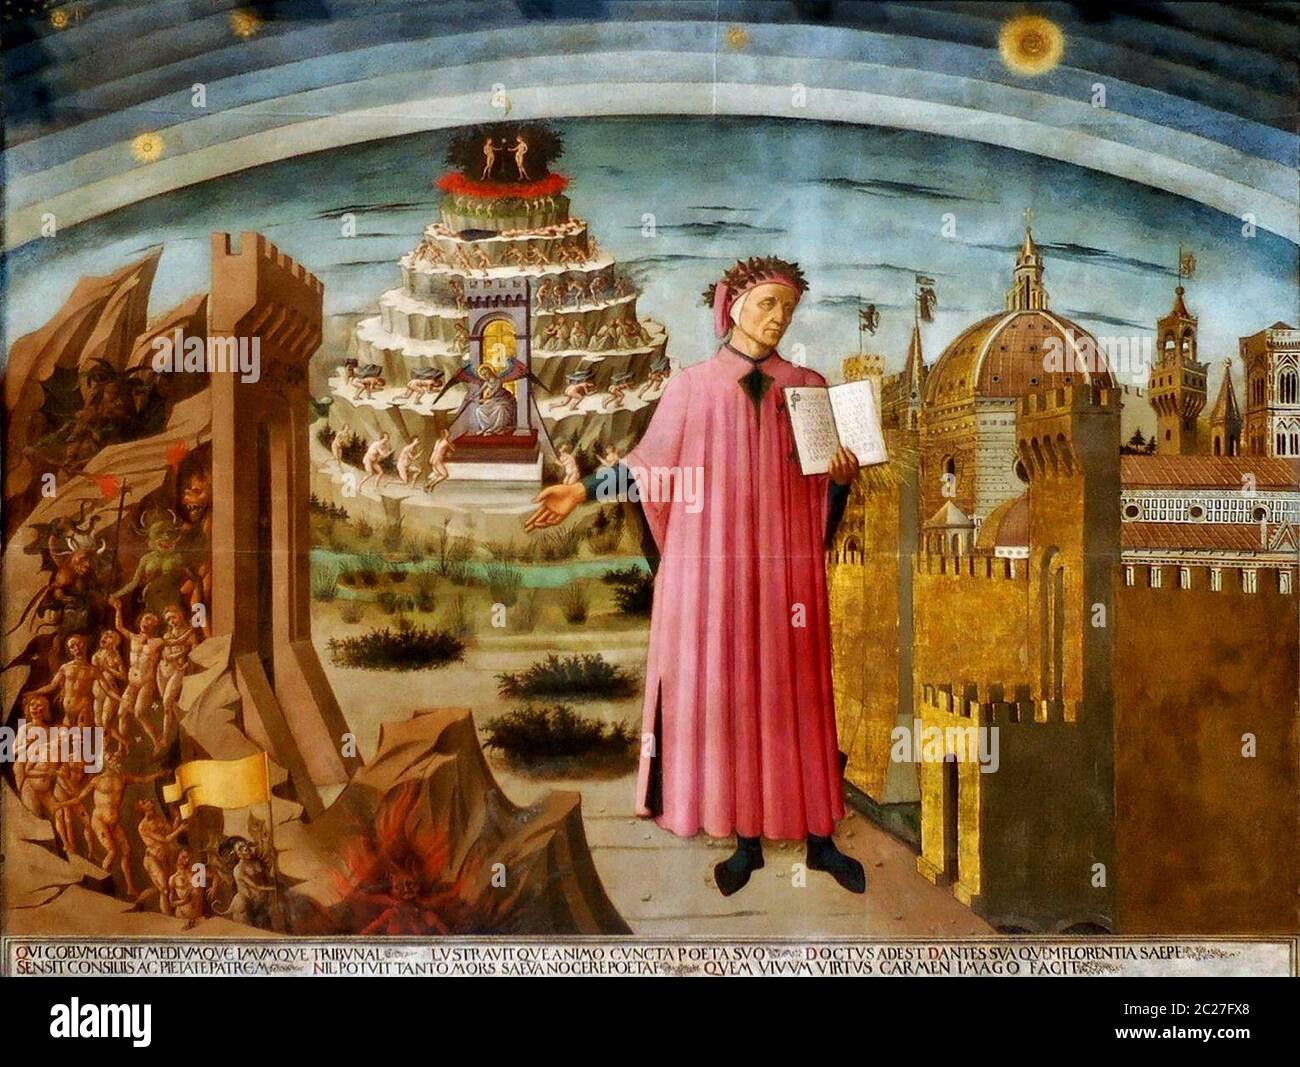 Dante ha mostrato con una copia della Divina Commedia, accanto all'ingresso dell'Inferno, le sette terrazze del Monte Purgatorio e della città di Firenze, con le sfere del Paradiso sopra, nell'affresco di Michelino - Domenico di Michelino, intorno al 1465 Foto Stock